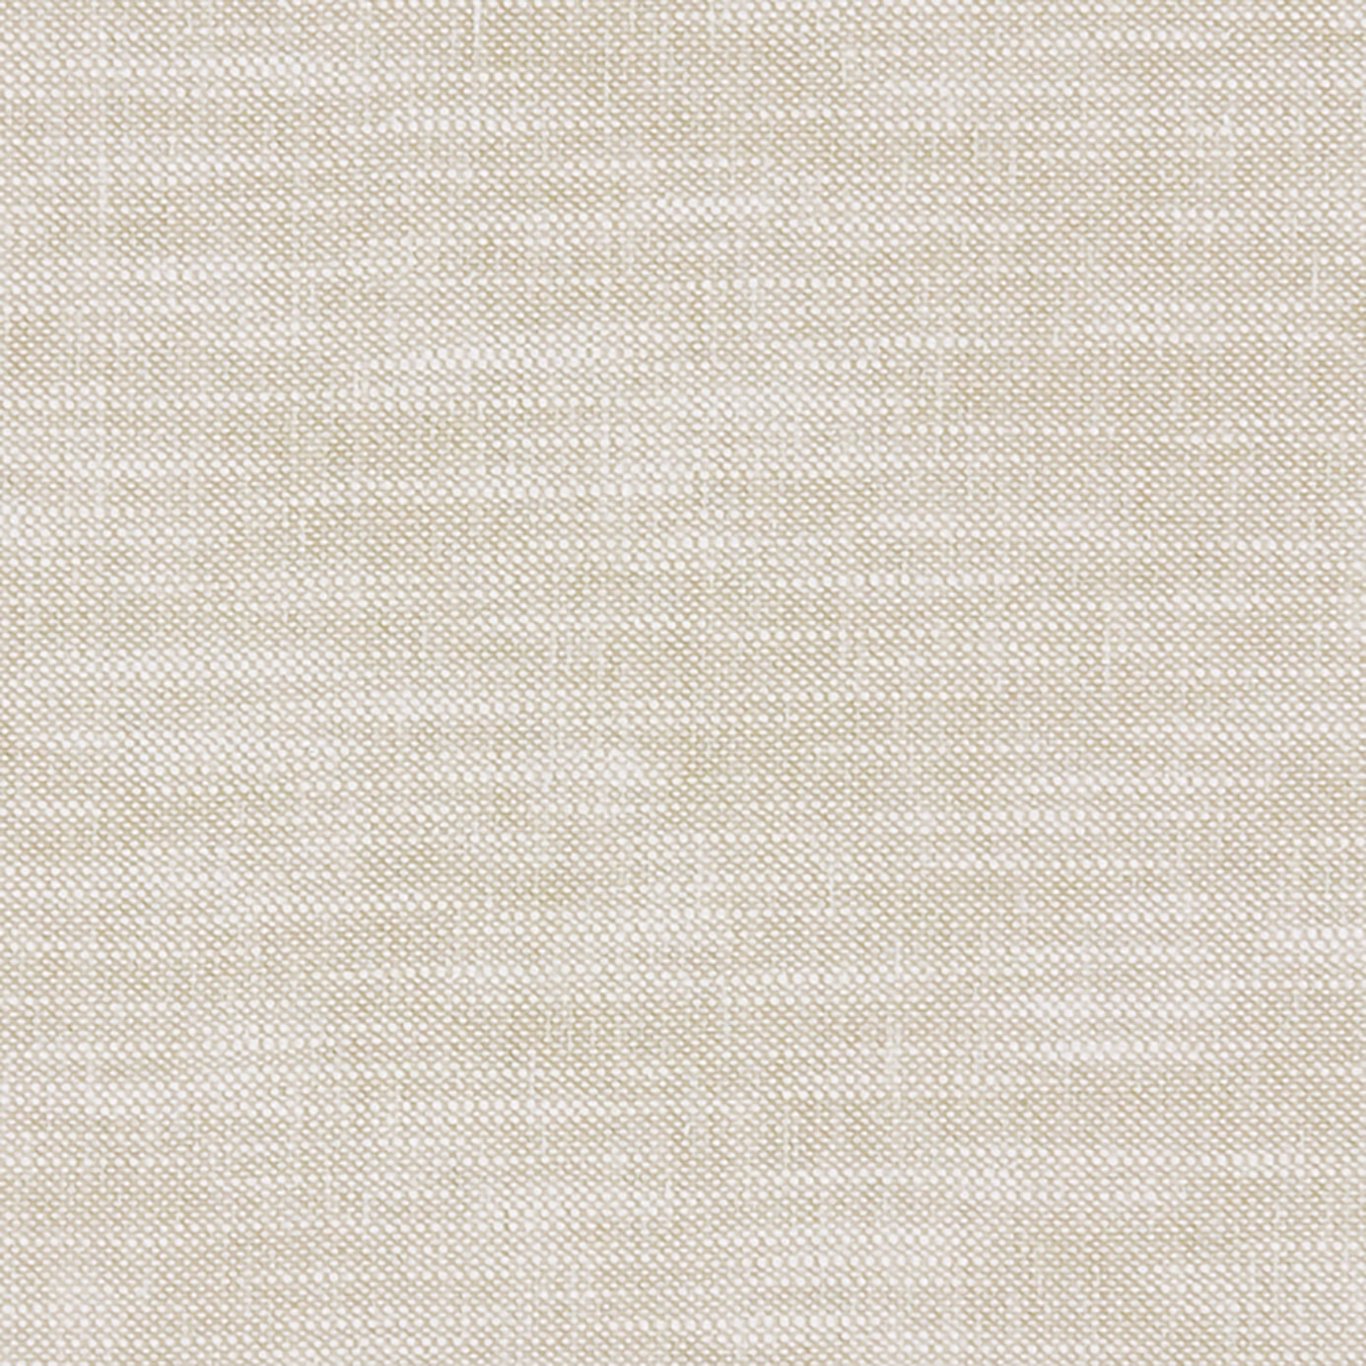 Amalfi Fabric by Clarke & Clarke - F1239/36 - Linen